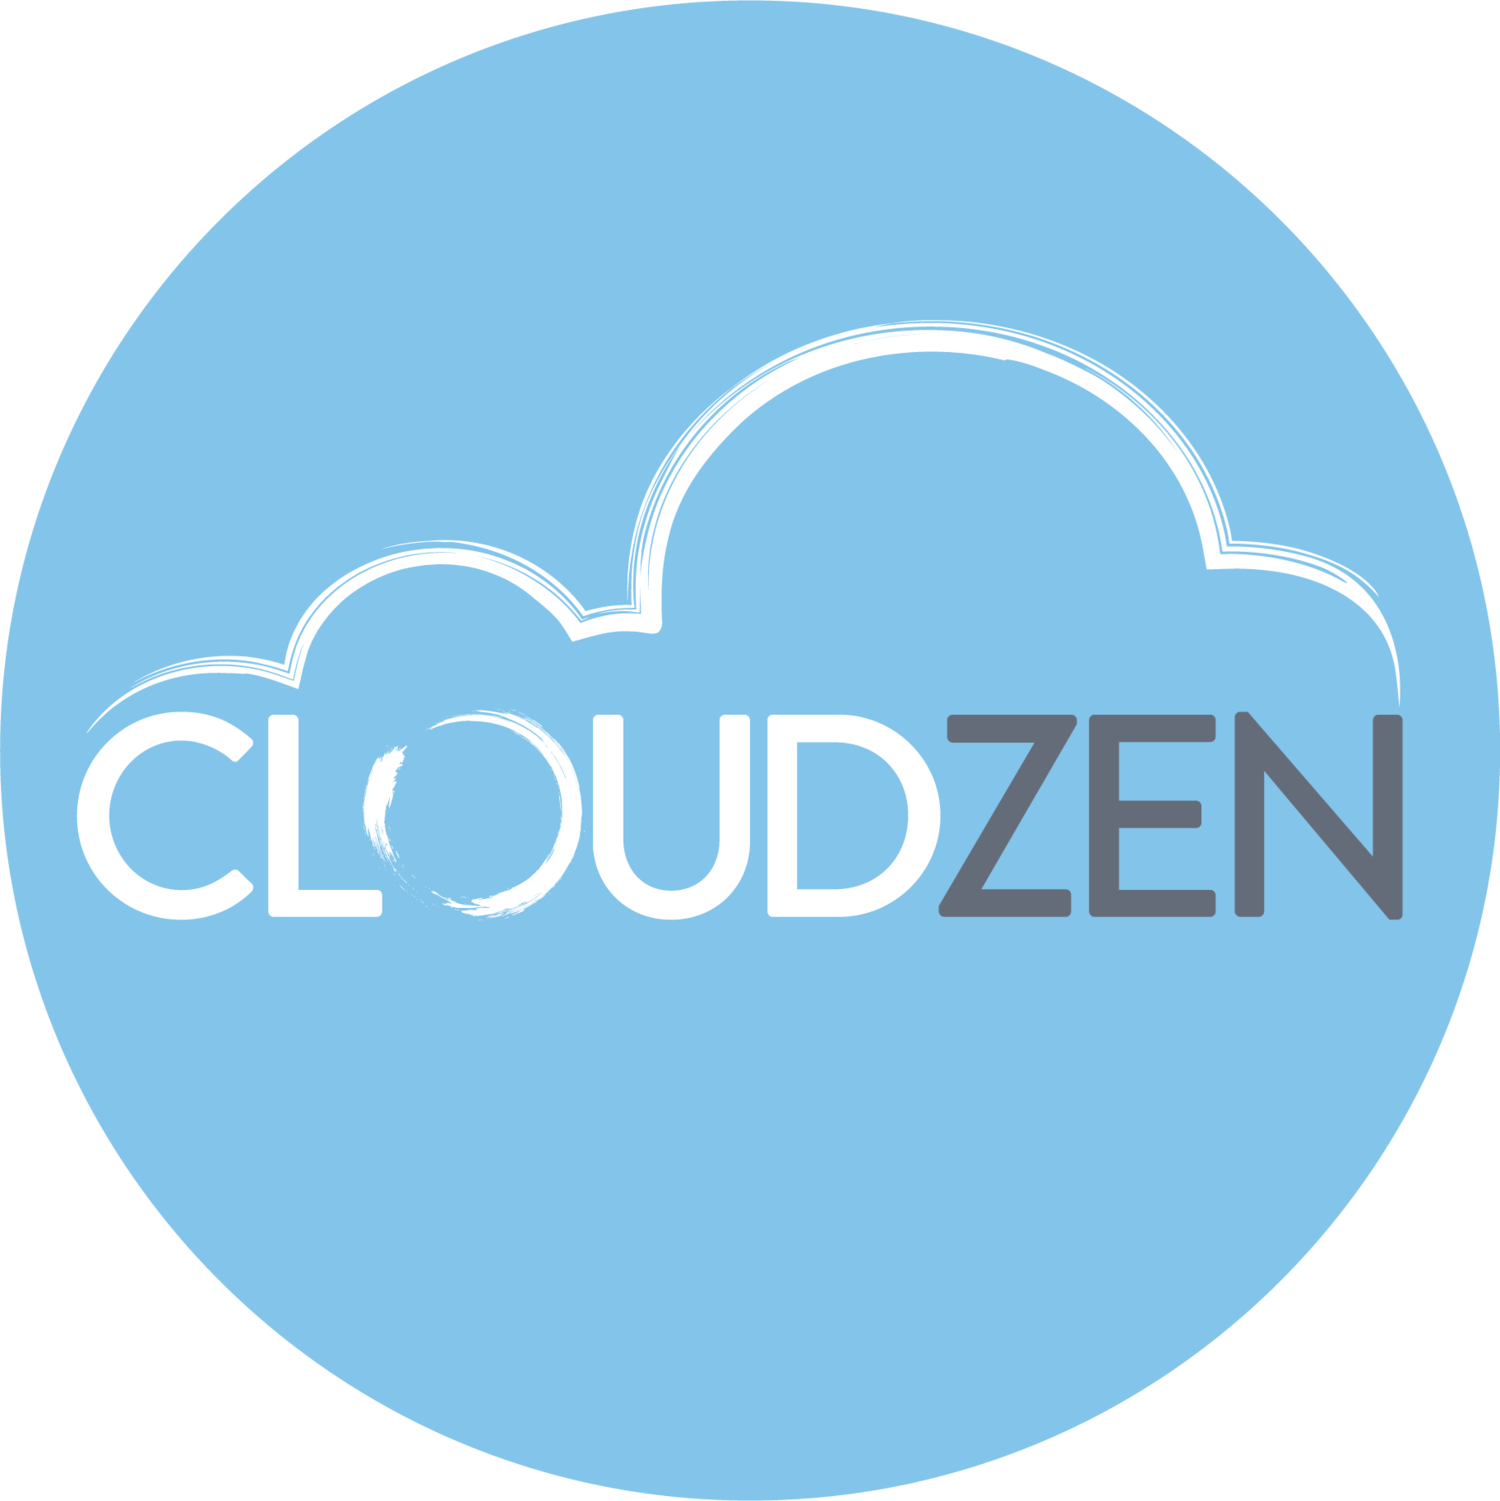 CloudZen 